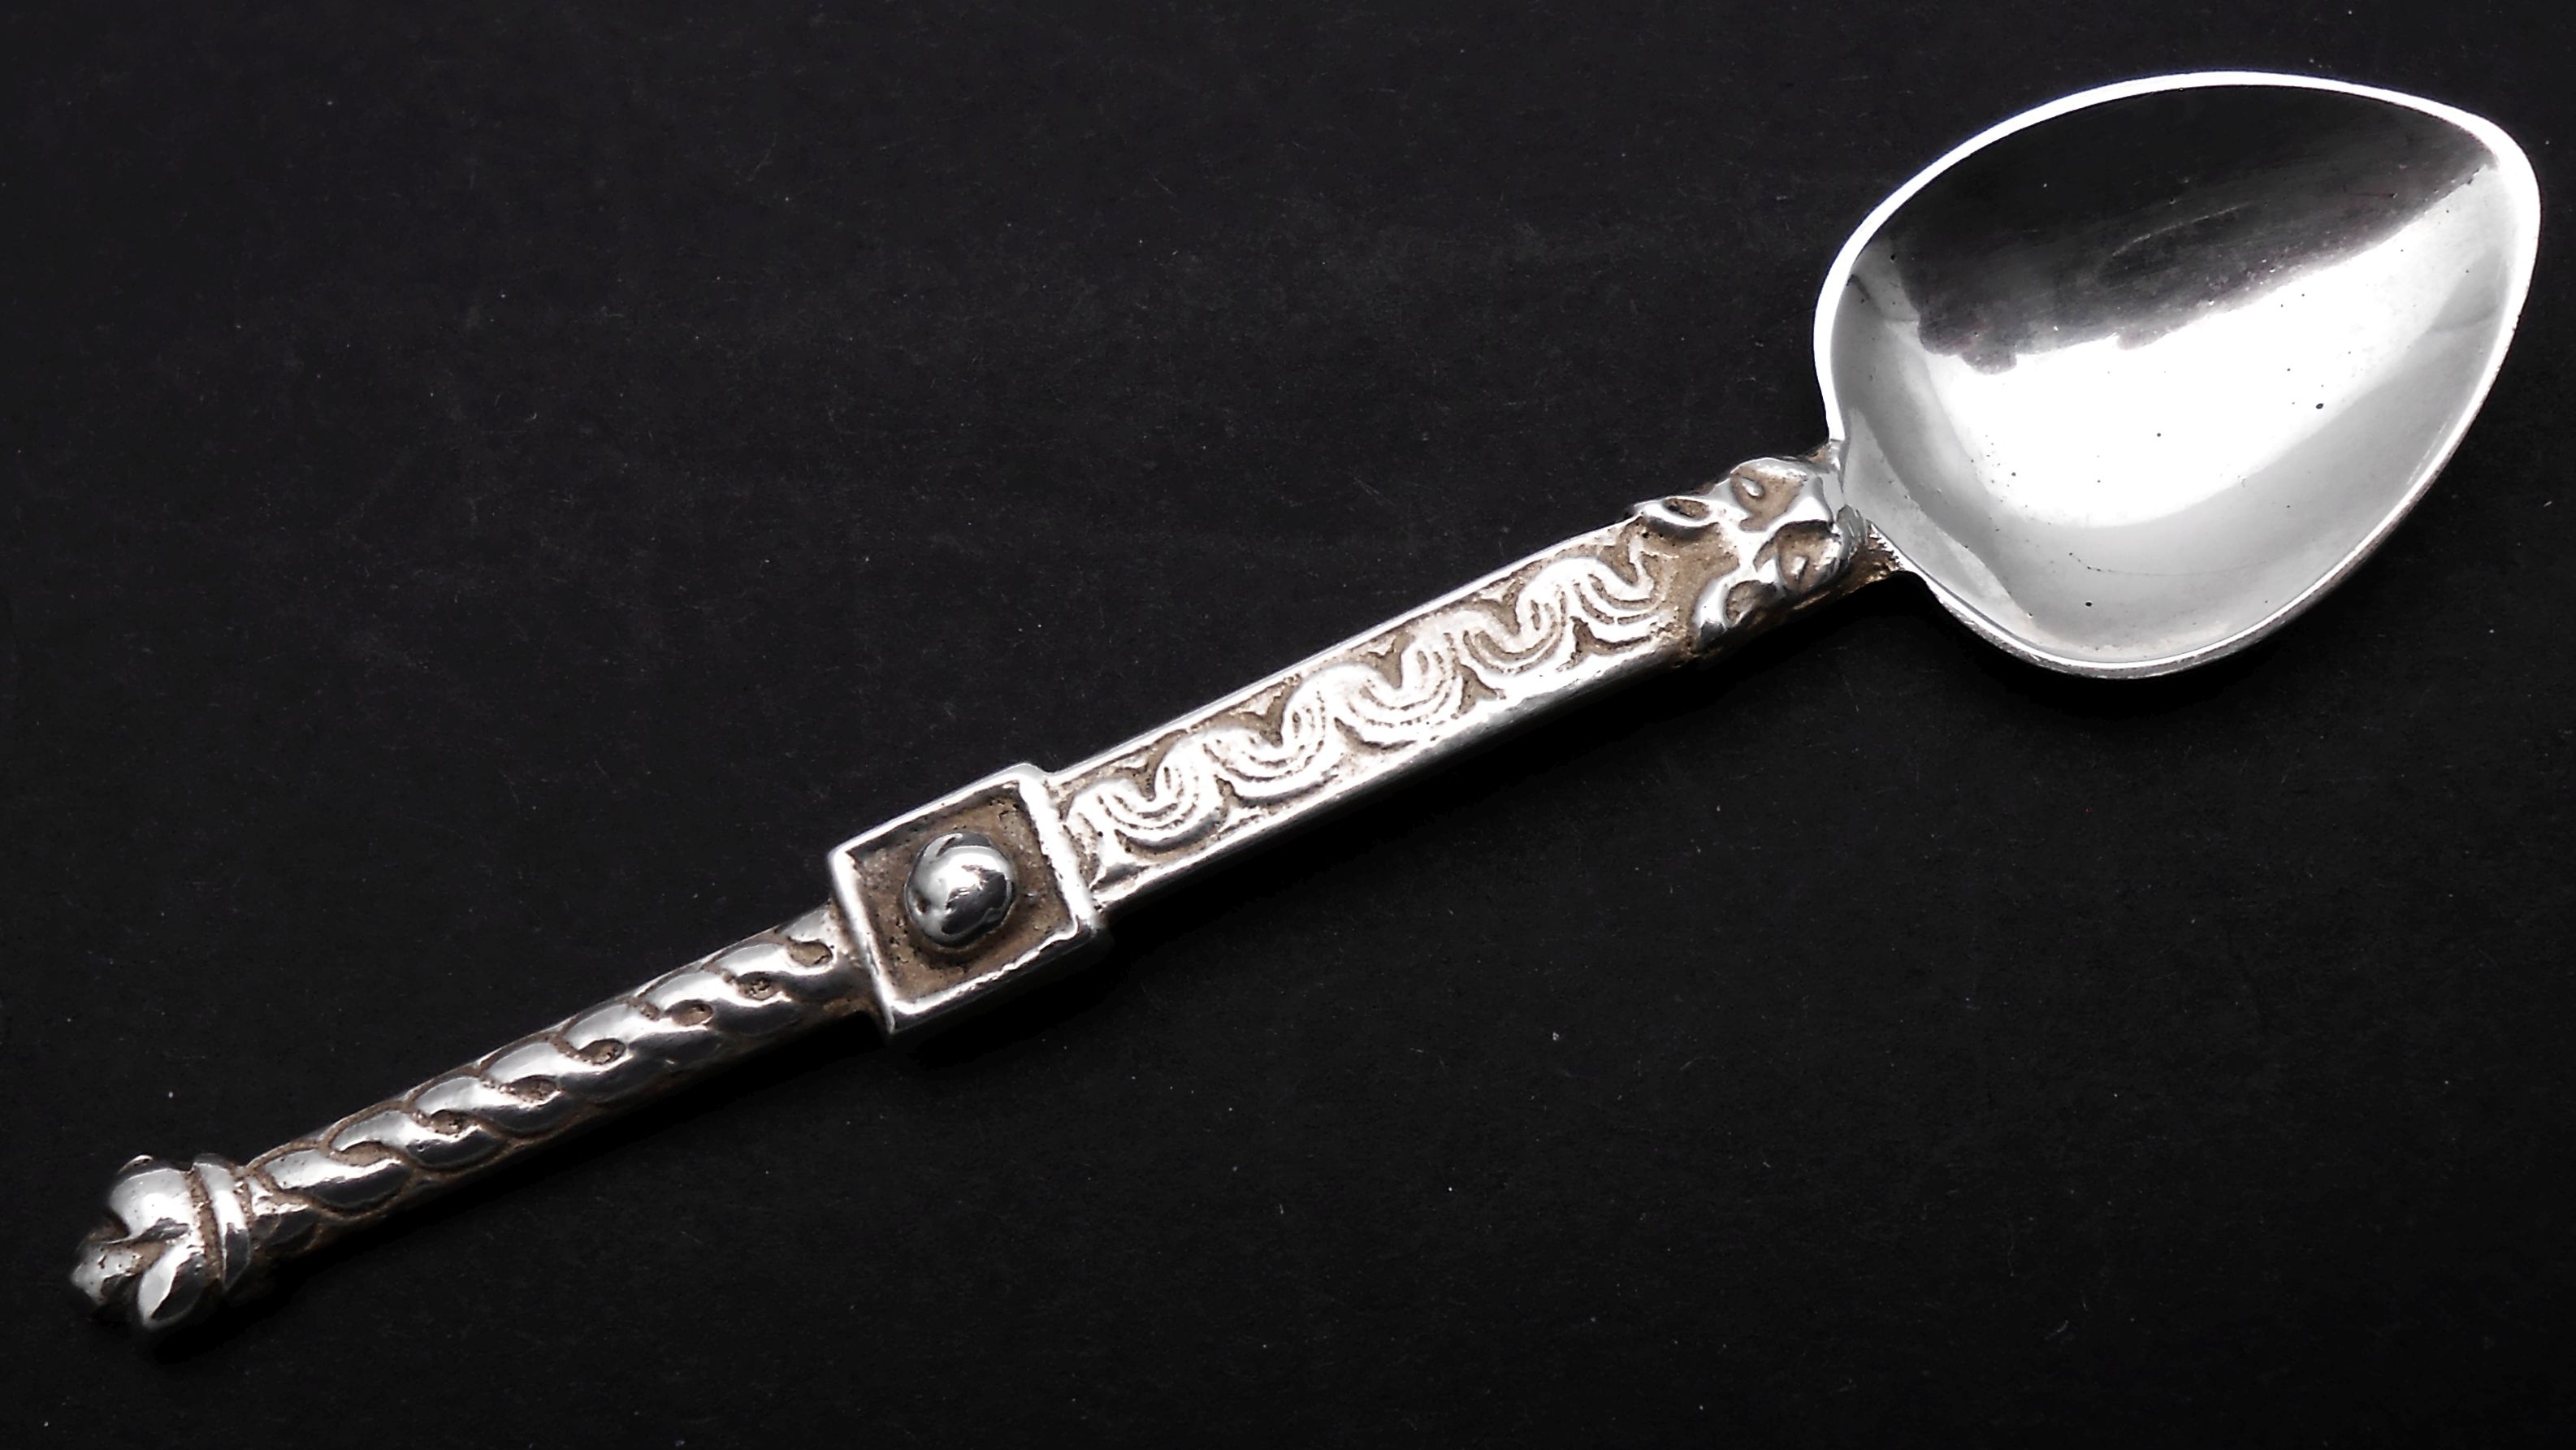 Silver Souvenir Spoons 11th May at 21:00BST